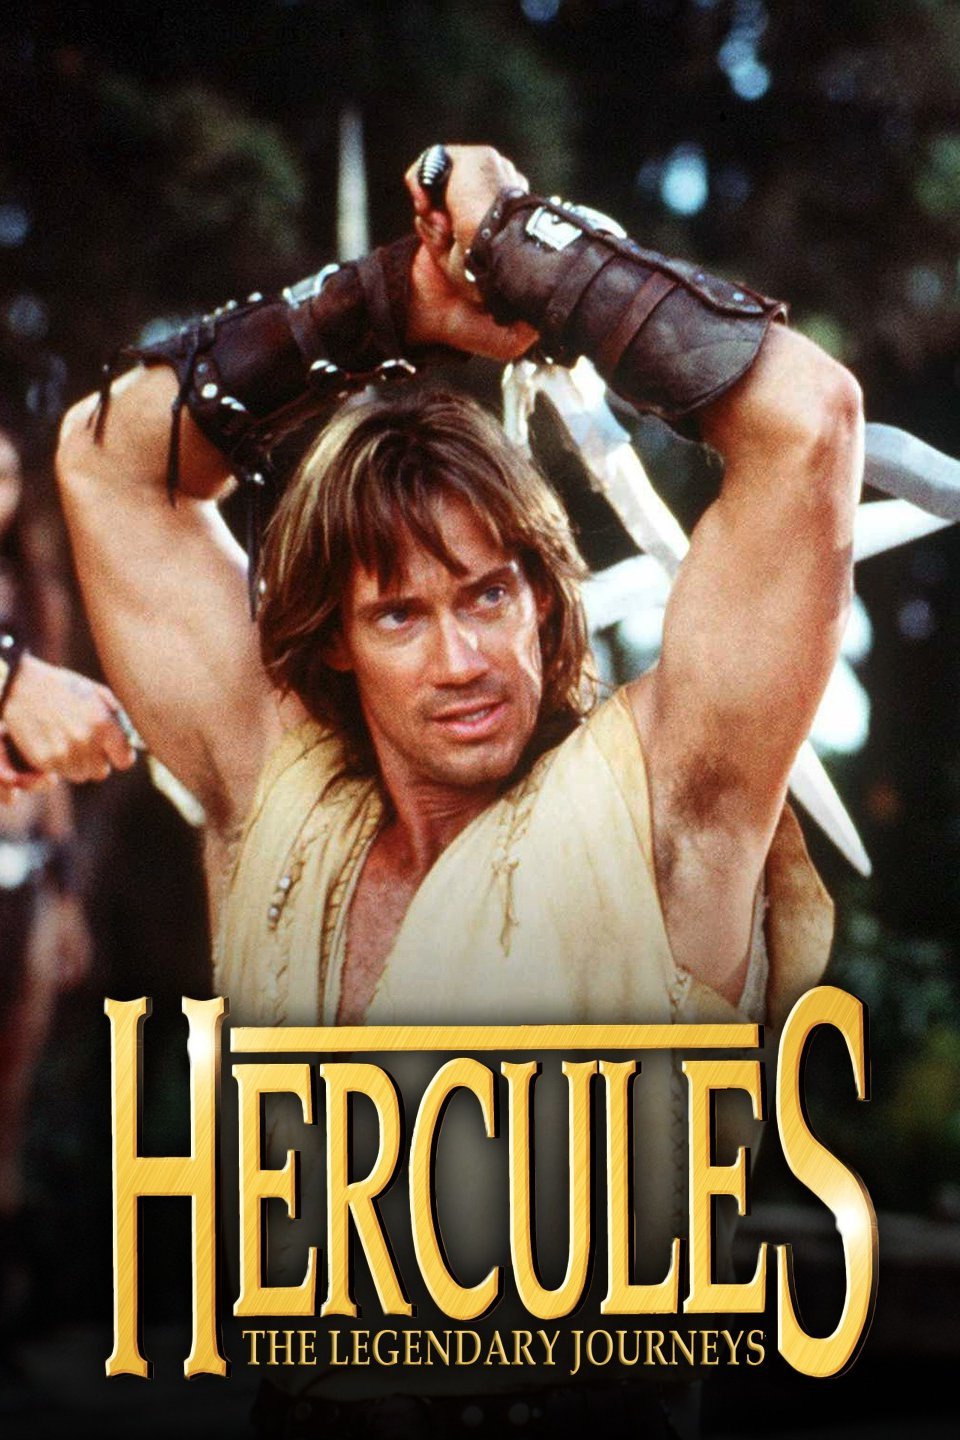 hercules legendary journeys full episodes